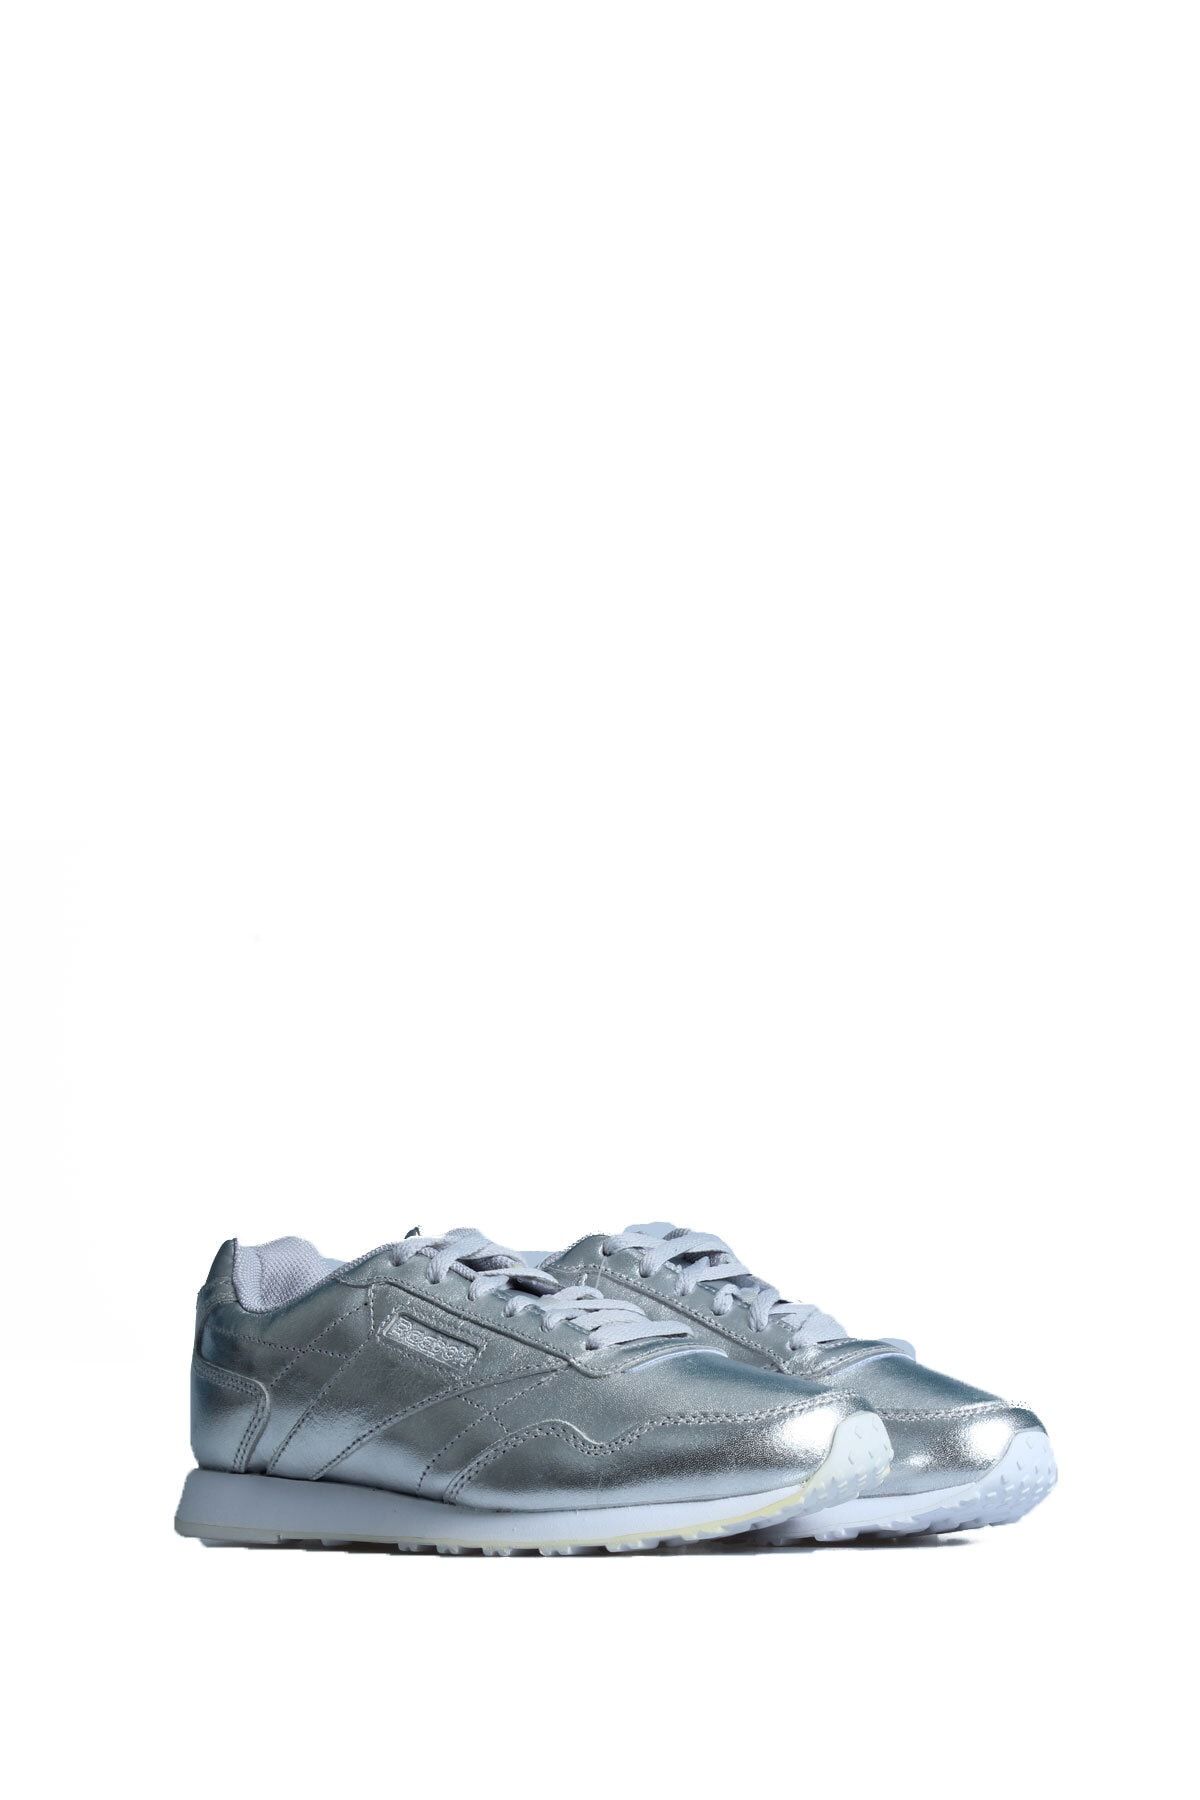 Reebok Cn3118 Bayan Gümüşş Günlük Spor Ayakkabı